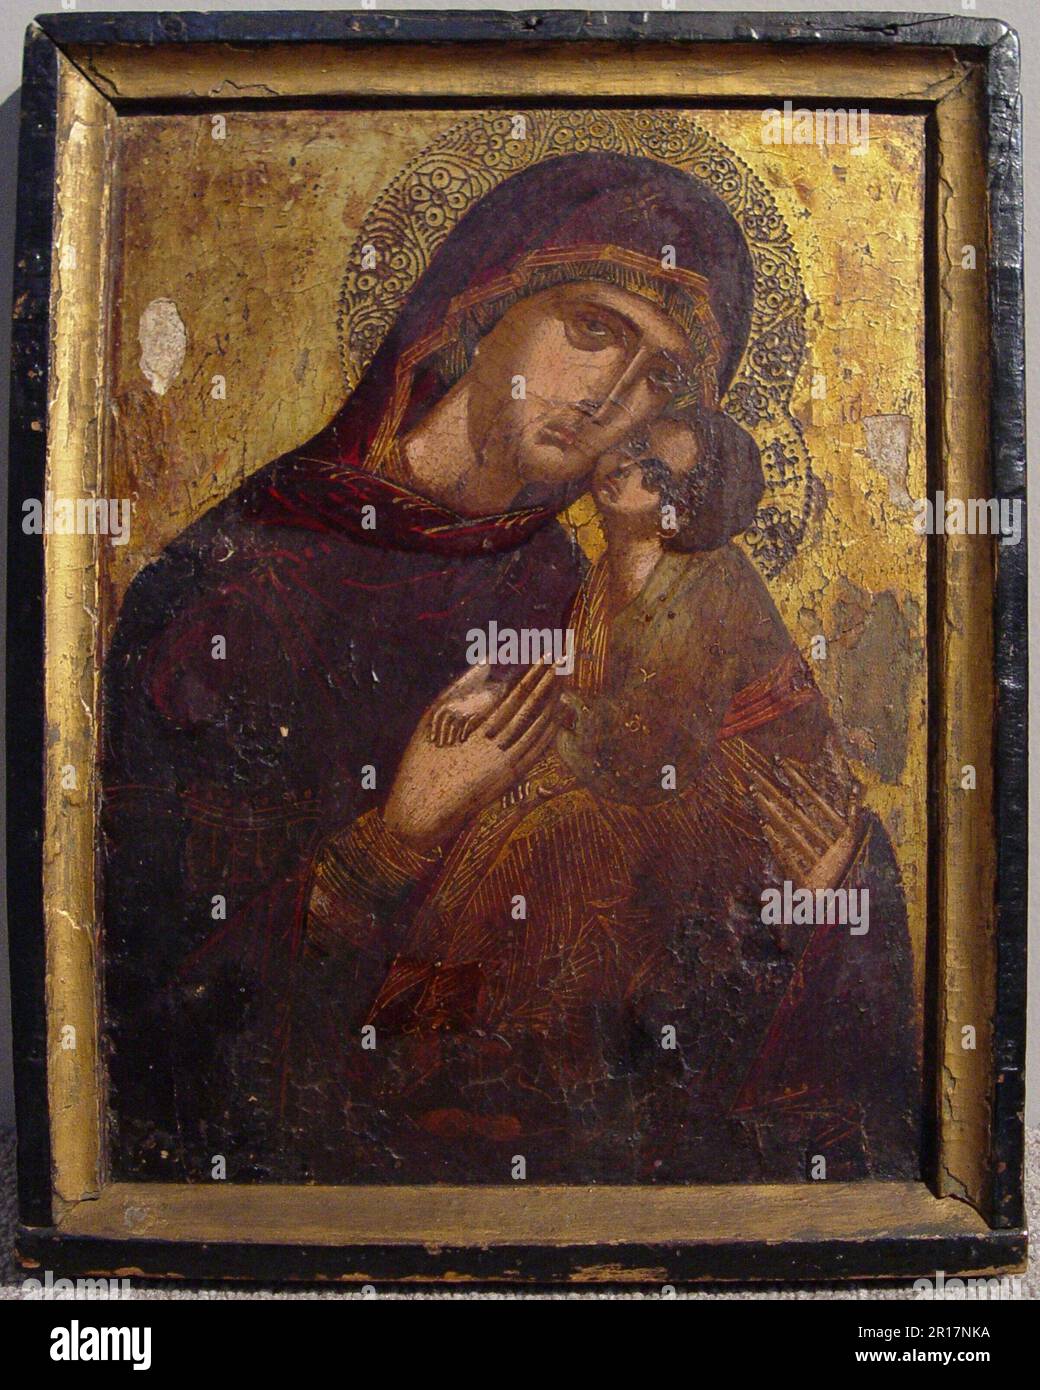 Icona con la Vergine e Bambino Data: c. 1500 artista: Cretan Foto Stock